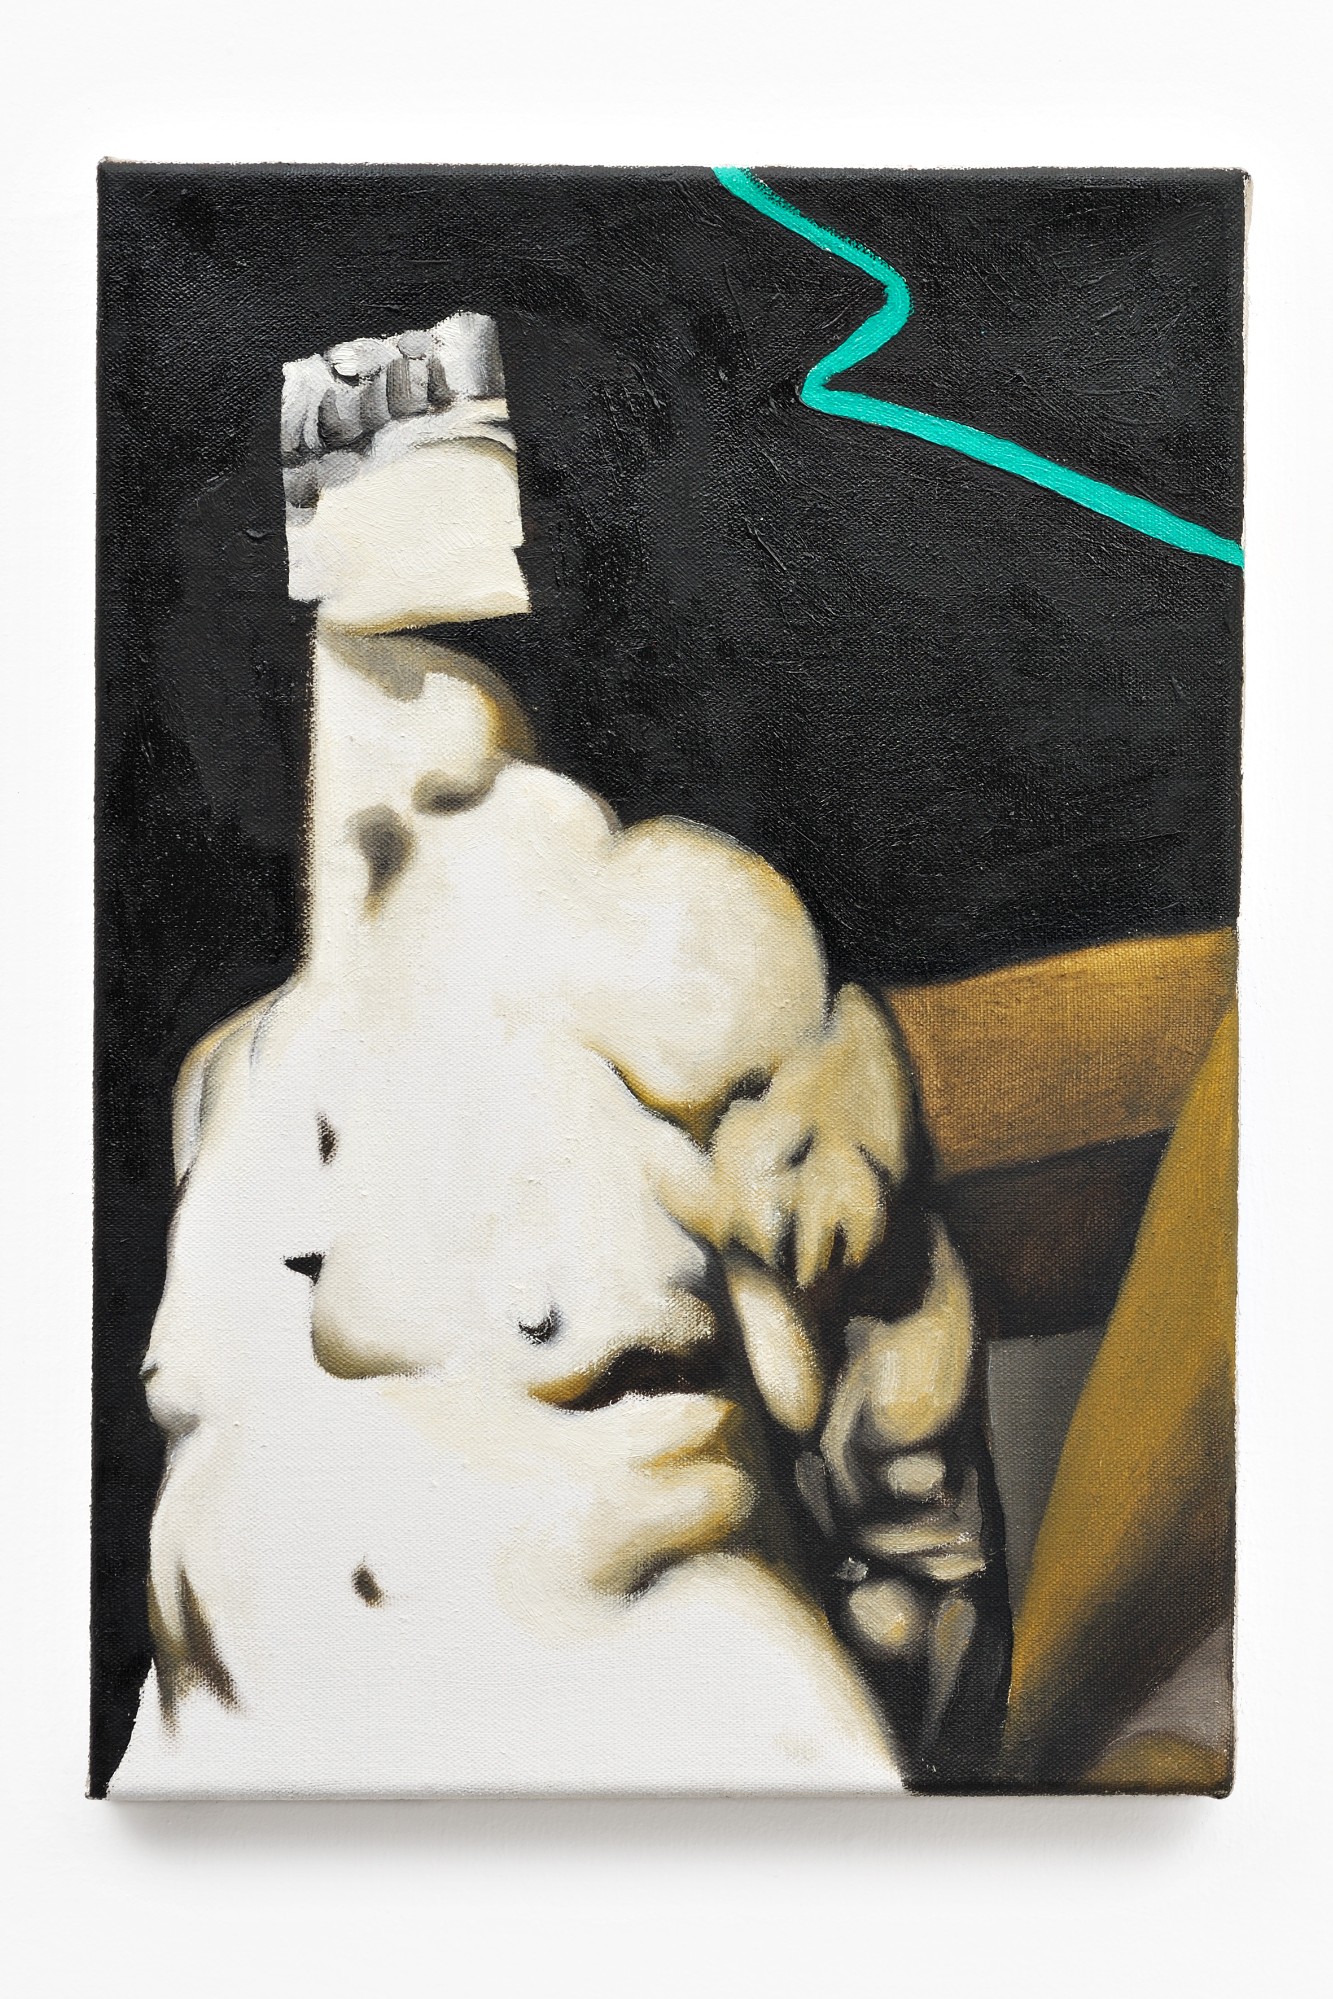 René Luckhardt, Untitled Nude, 2015, oil on canvas, 49,5 x 34,5 cm